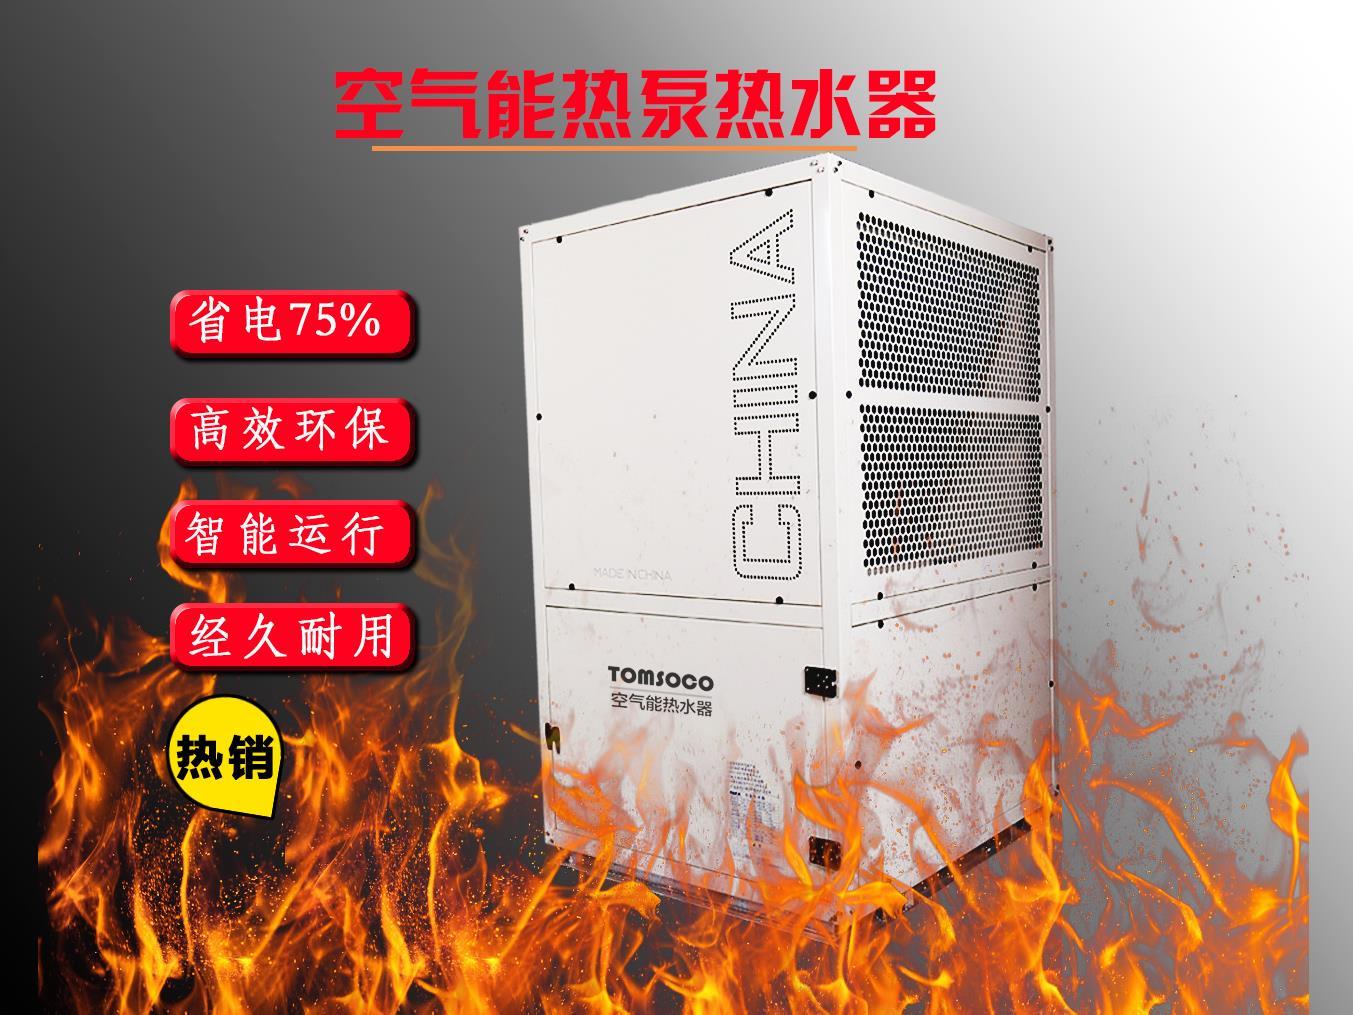 上海空气源热泵经销商